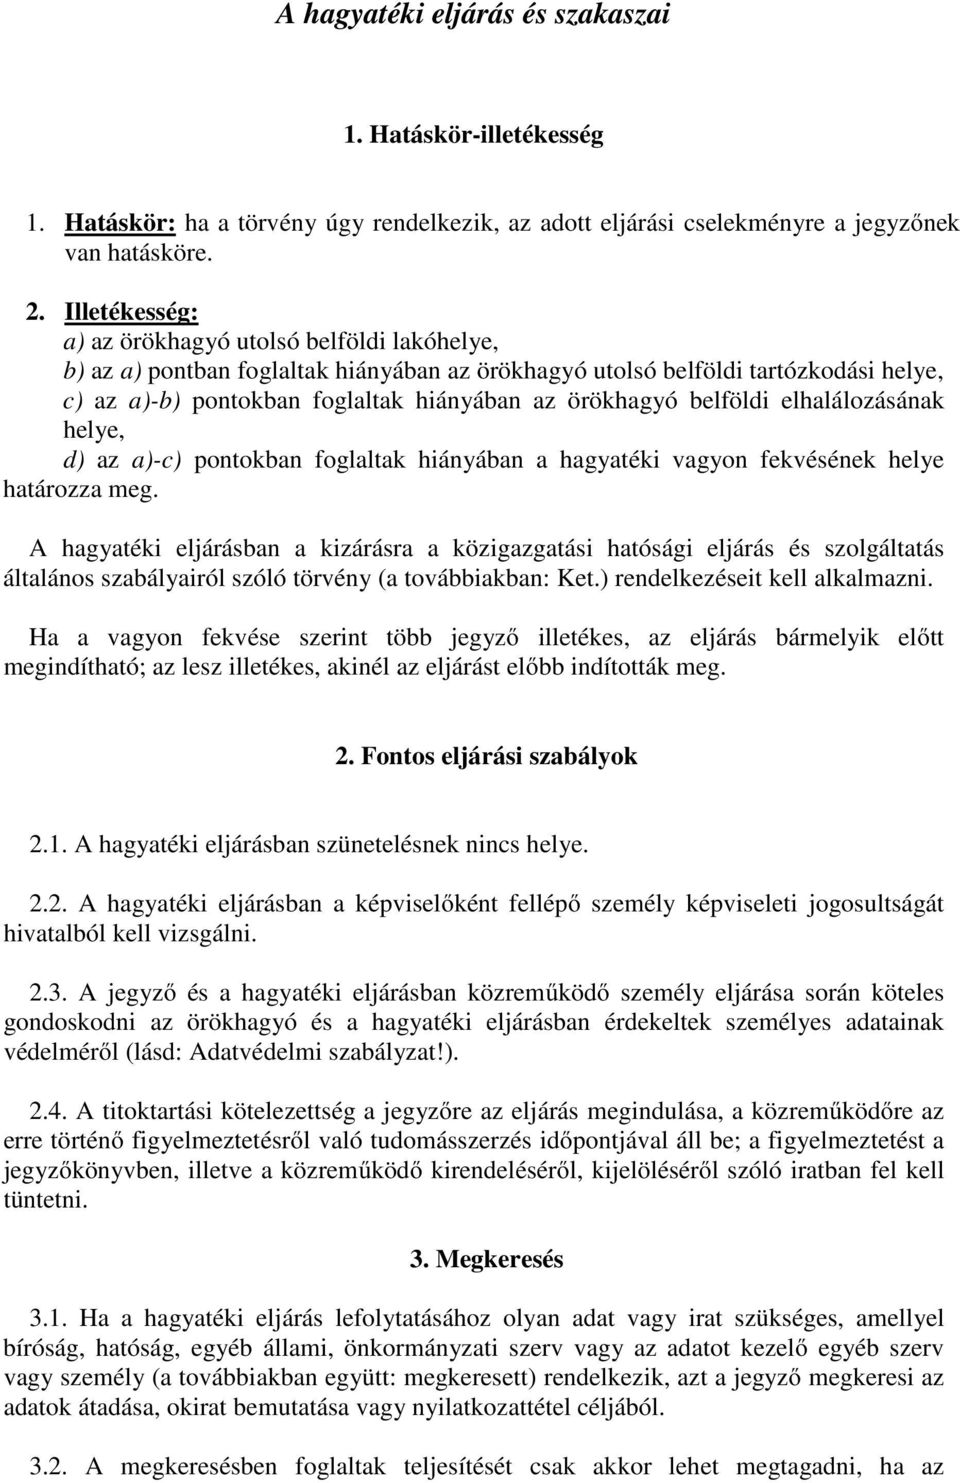 A hagyatéki eljárás és szakaszai - PDF Ingyenes letöltés